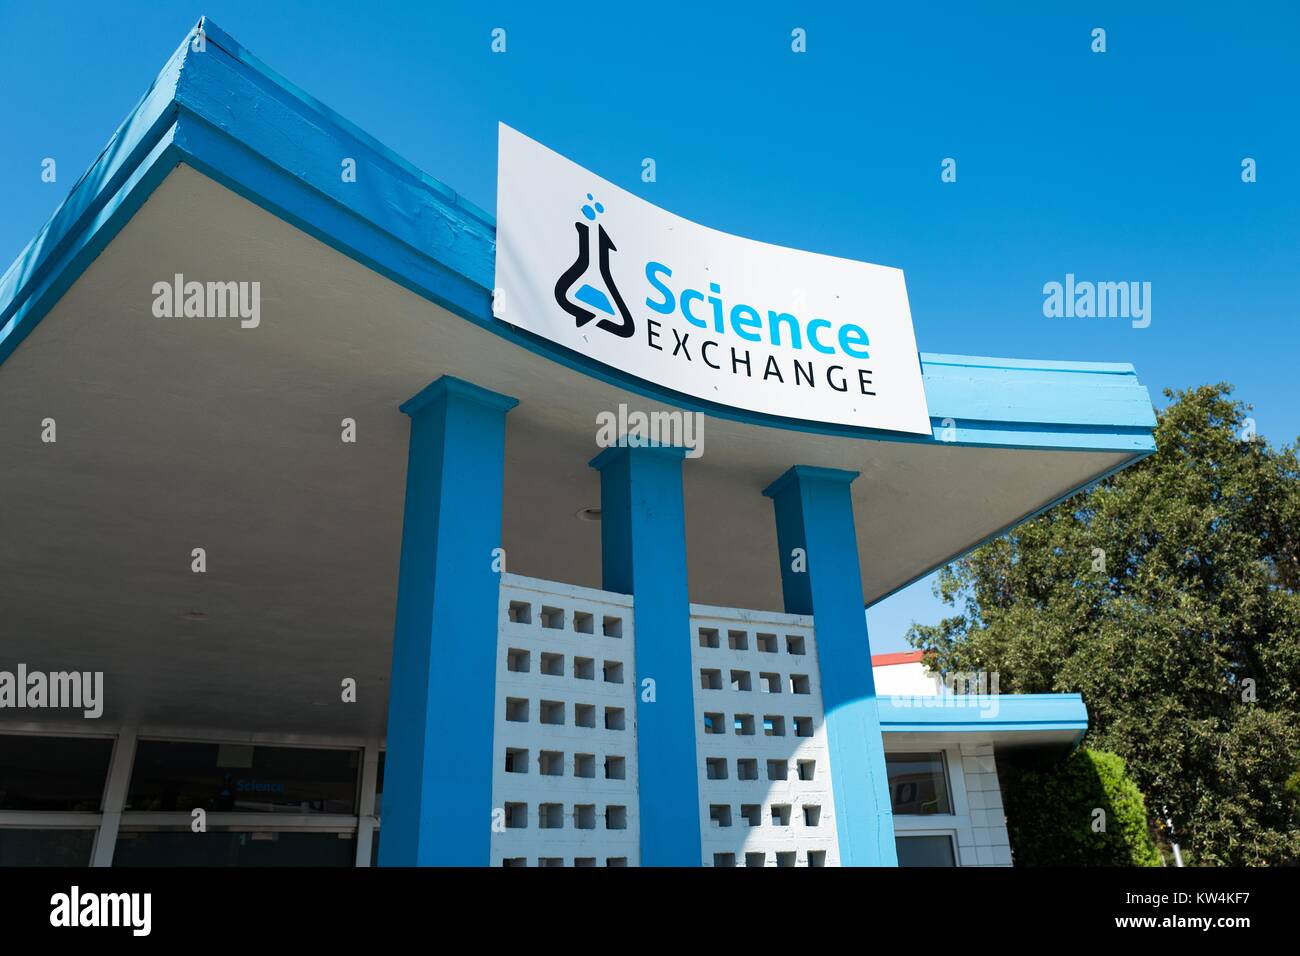 L'affichage du logo et de l'administration centrale de la science change, une startup qui permet aux chercheurs d'externaliser des expériences scientifiques, dans la Silicon Valley ville de Palo Alto, Californie, le 25 août 2016. Banque D'Images